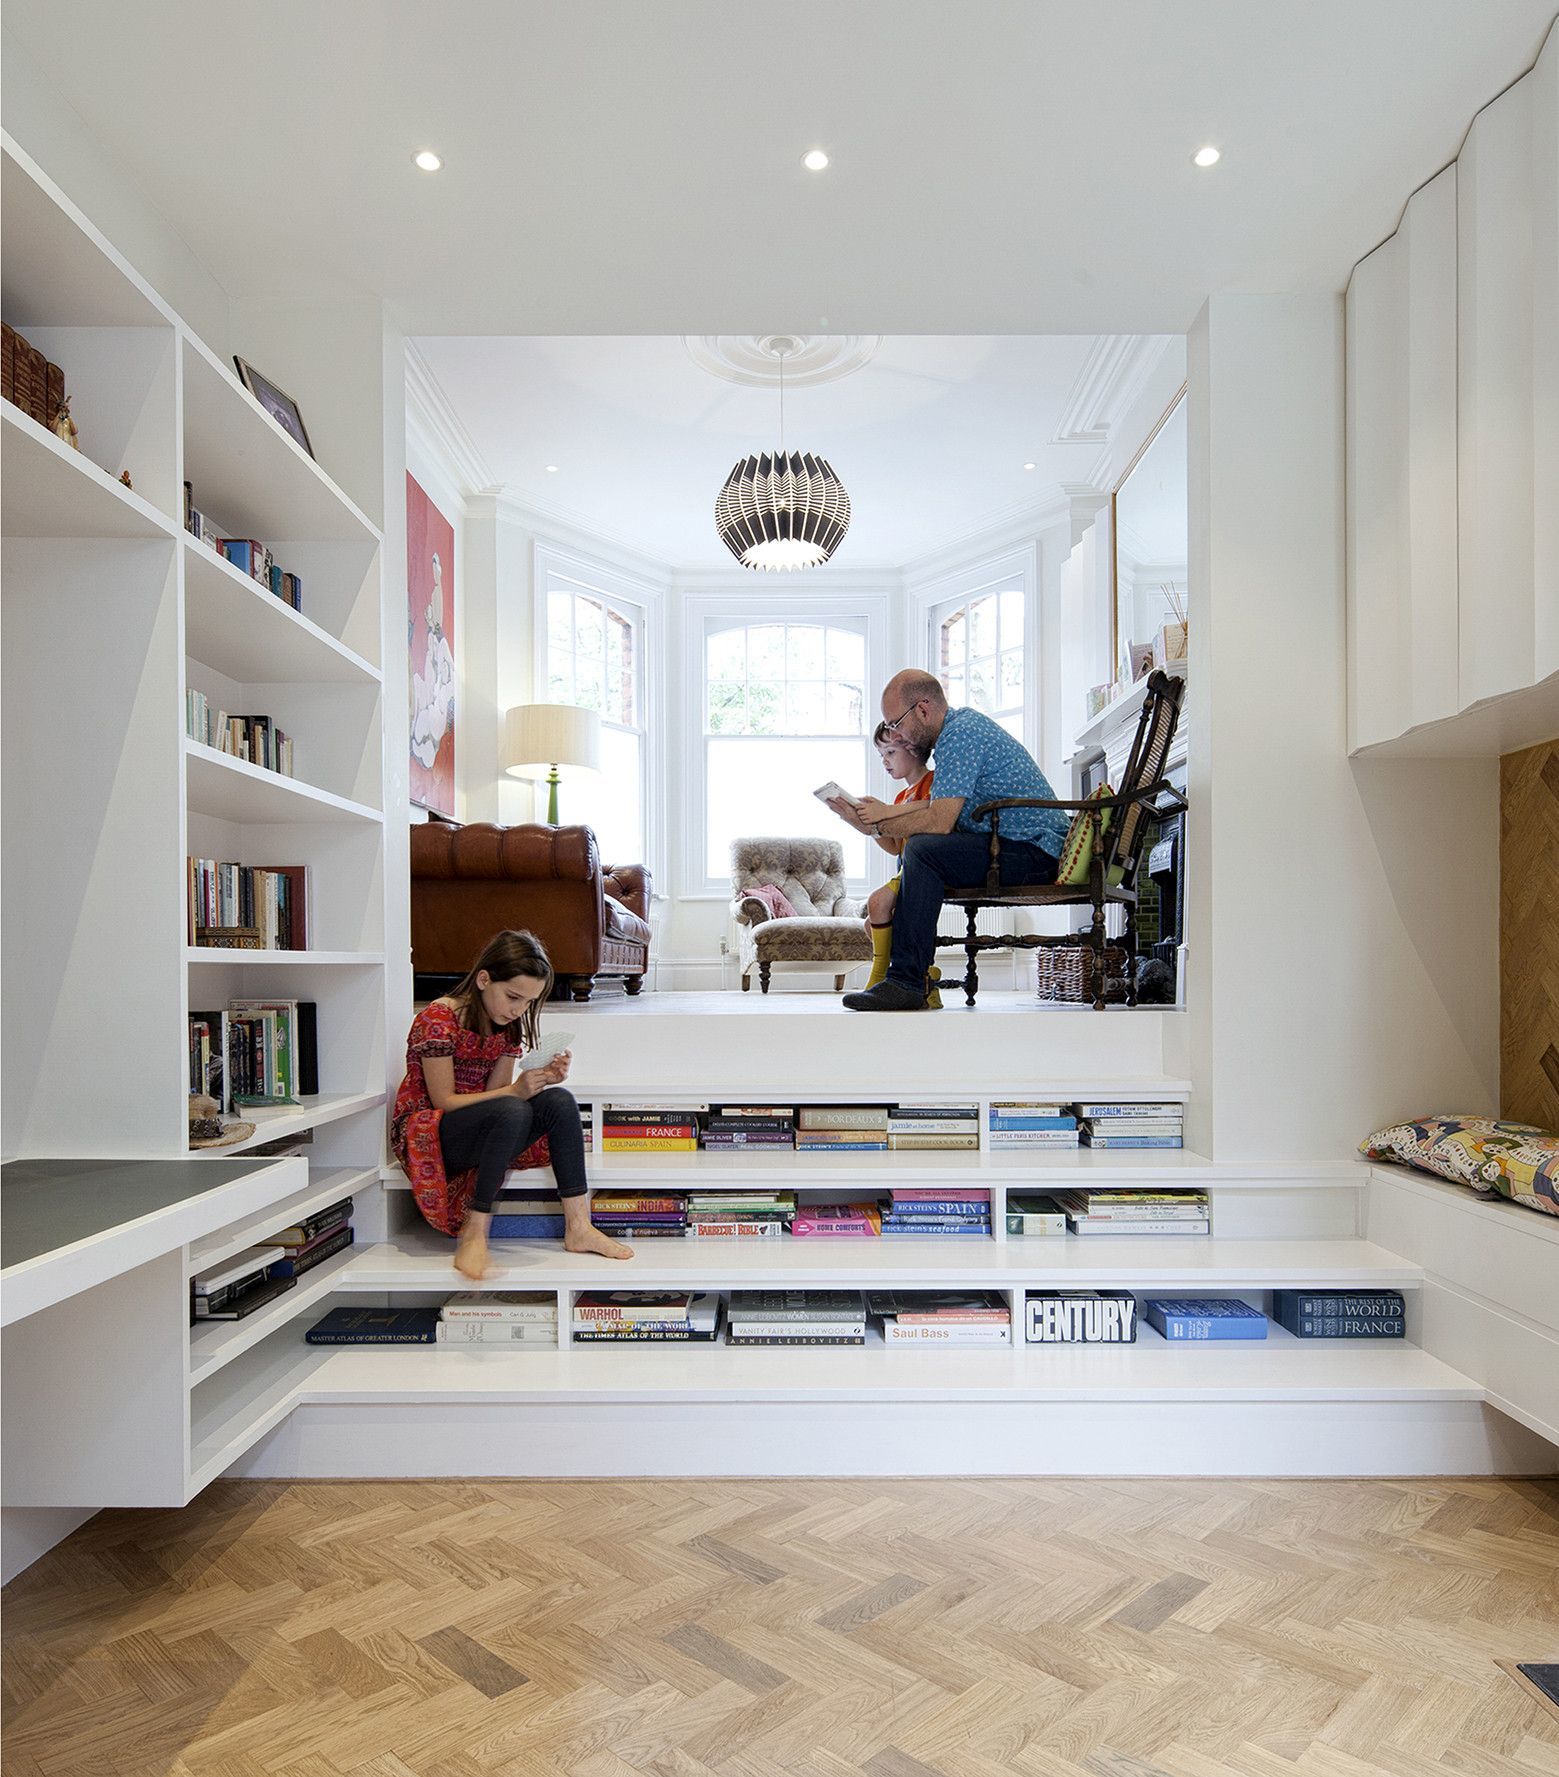 Thiết kế phòng đọc sách chung cư mang đến không gian rộng rãi và tiện nghi cho cư dân. Bạn sẽ có thể tận hưởng niềm đam mê đọc sách mà không cần phải đi đâu xa. Với một sự kết hợp giữa các thiết kế hiện đại và truyền thống, phòng đọc sách sẽ là nơi lý tưởng để thư giãn và trau dồi kiến thức.